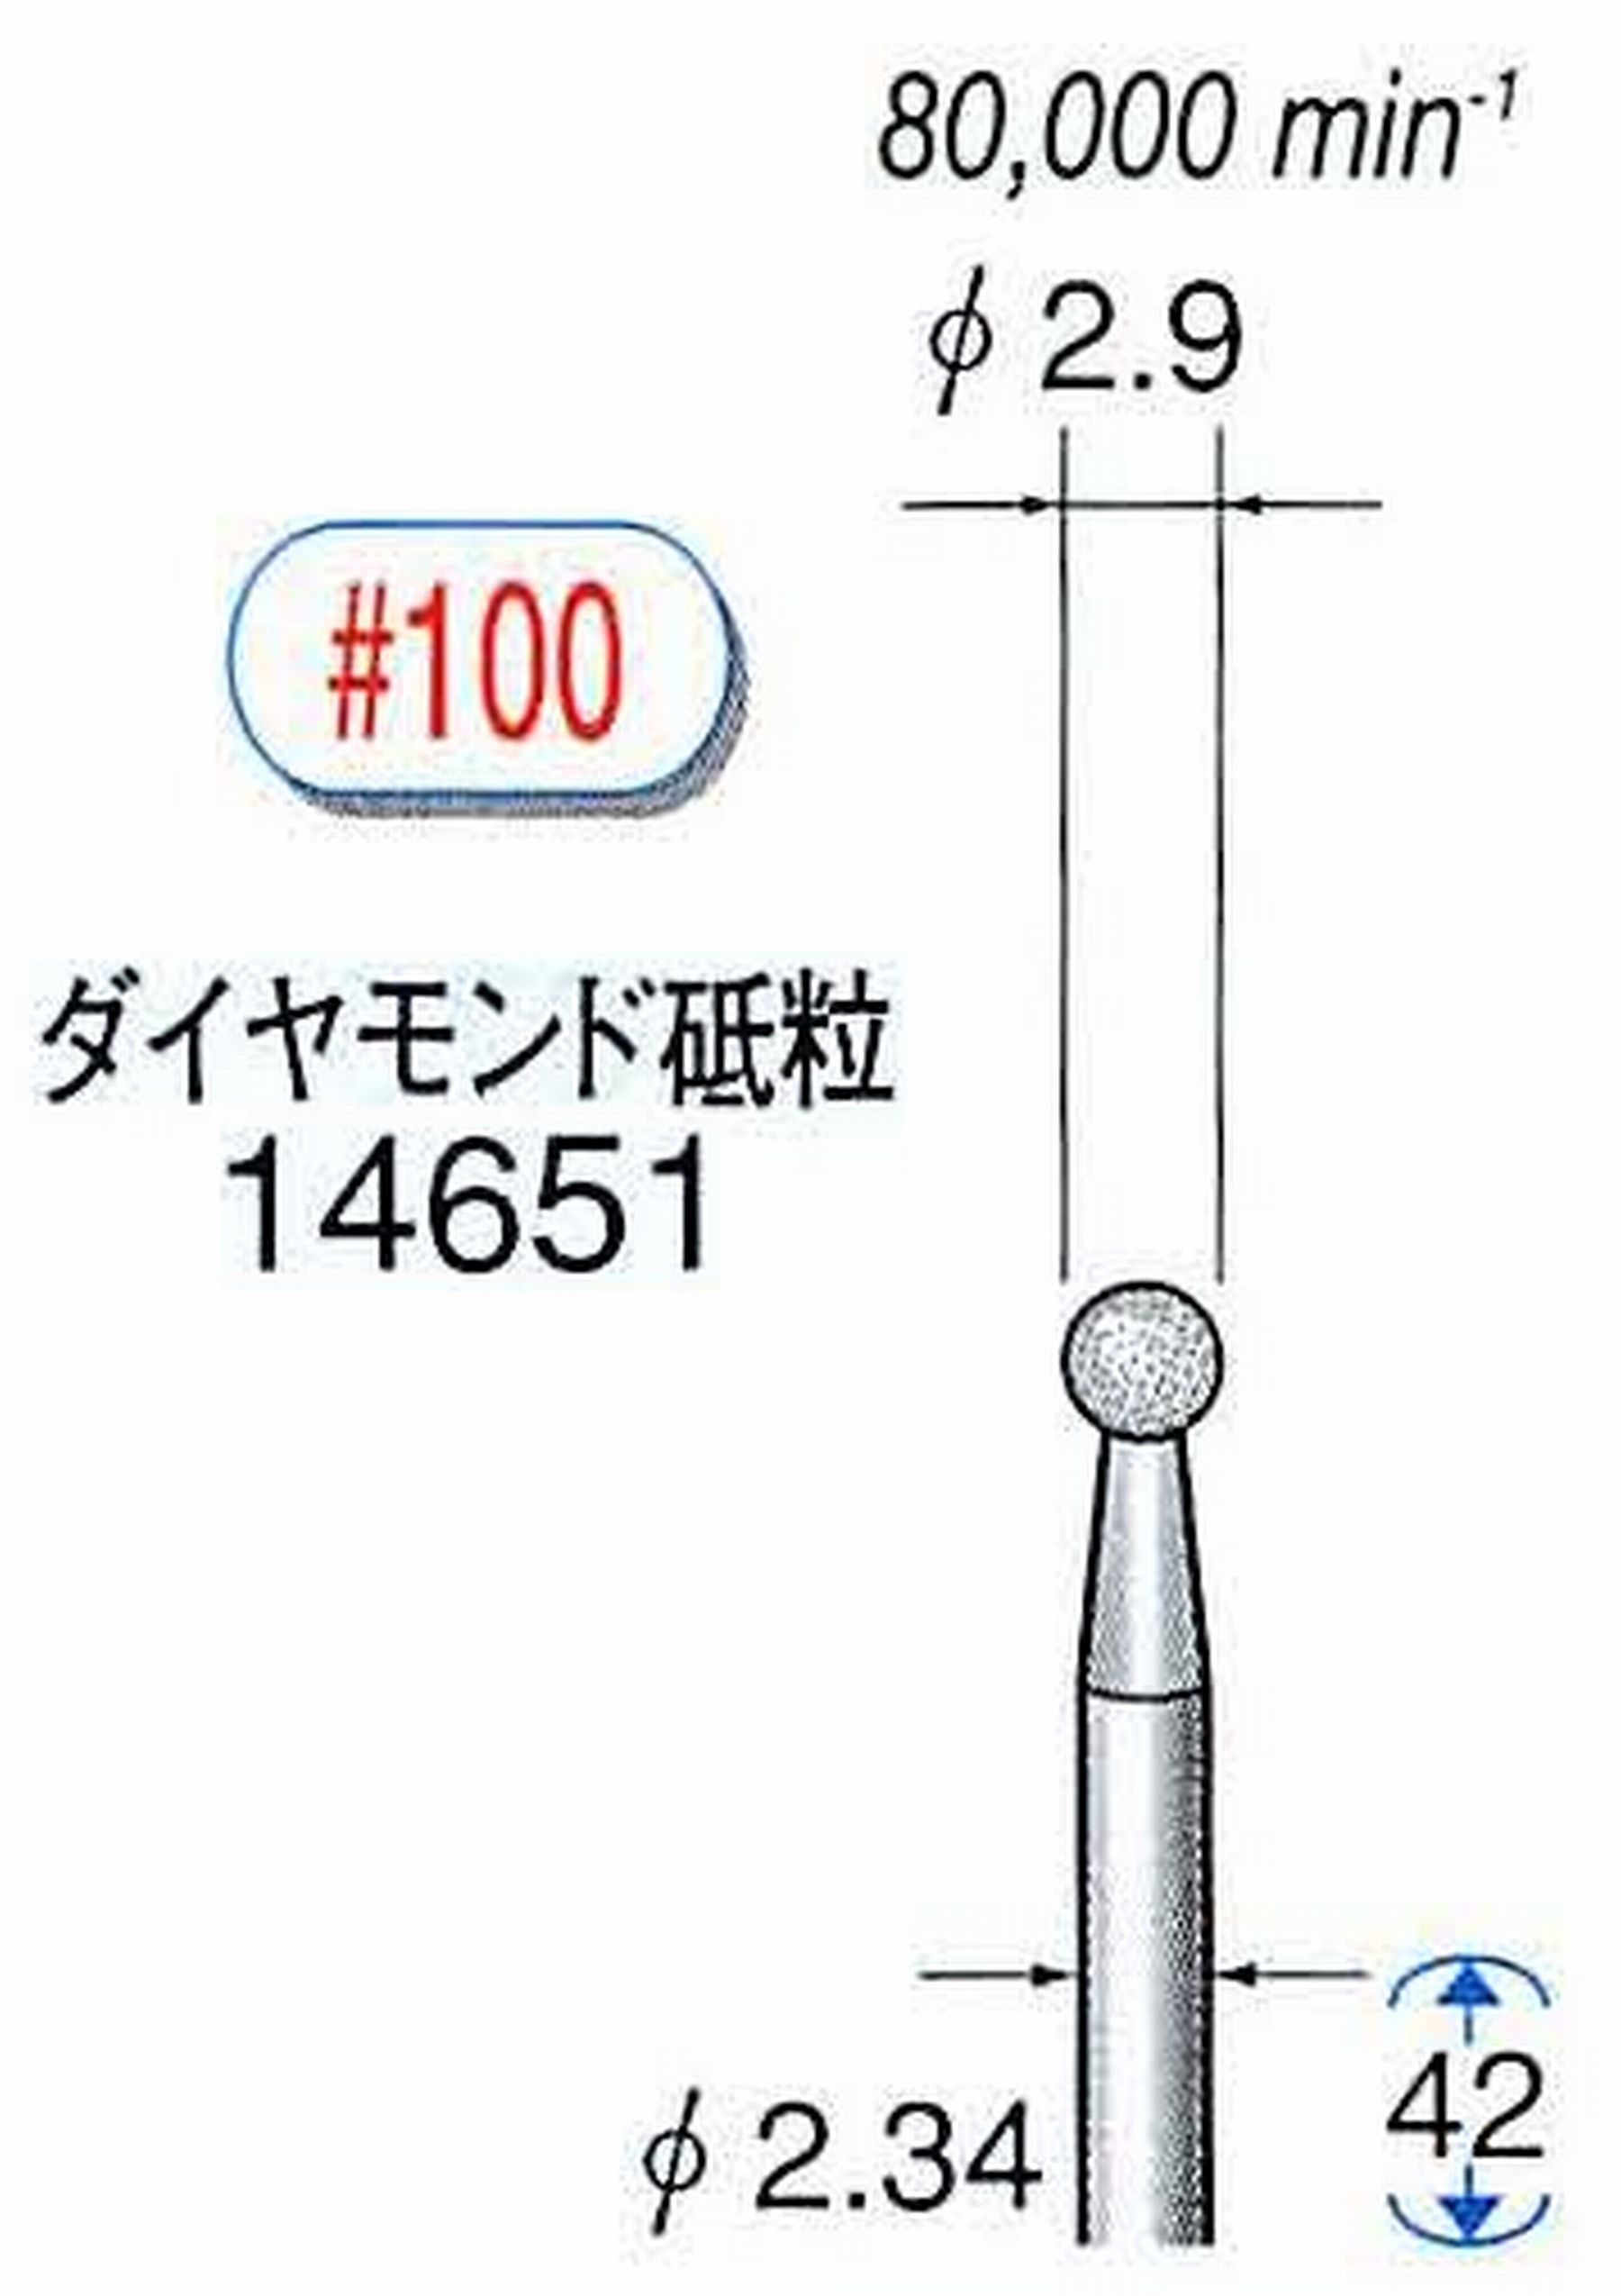 ナカニシ/NAKANISHI ダイヤモンドバー メタルボンドタイプ ダイヤモンド砥粒 軸径(シャンク)φ2.34mm 14651